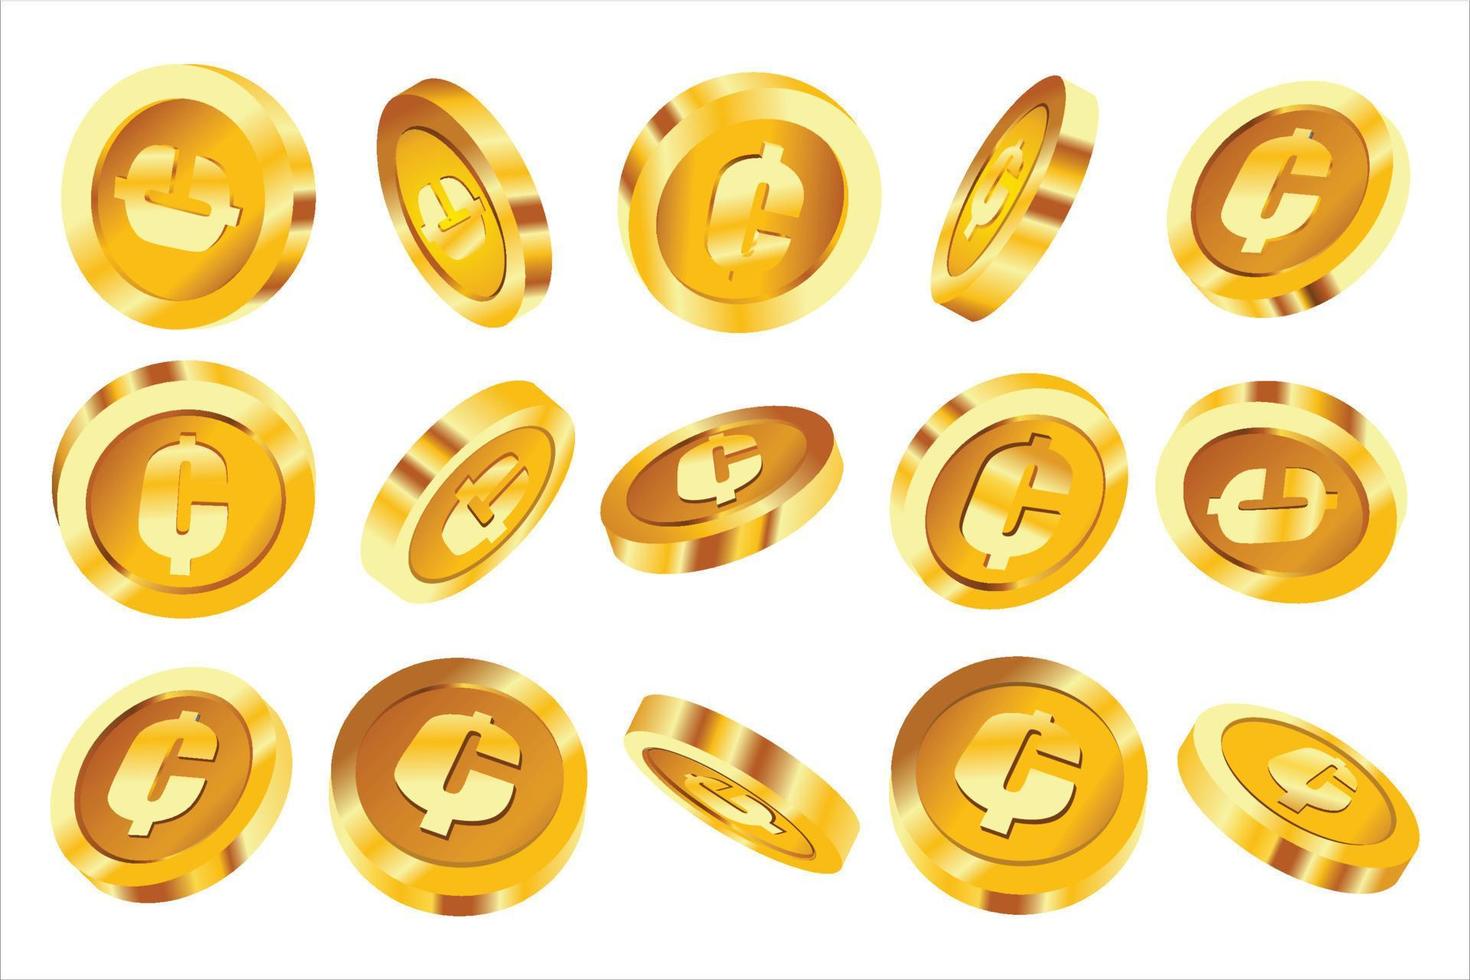 vector illustratie van reeks van Ghanees cedi munten concept in verschillend hoeken en oriëntaties. valuta teken Aan munt ontwerp in schaalbaar eps formaat